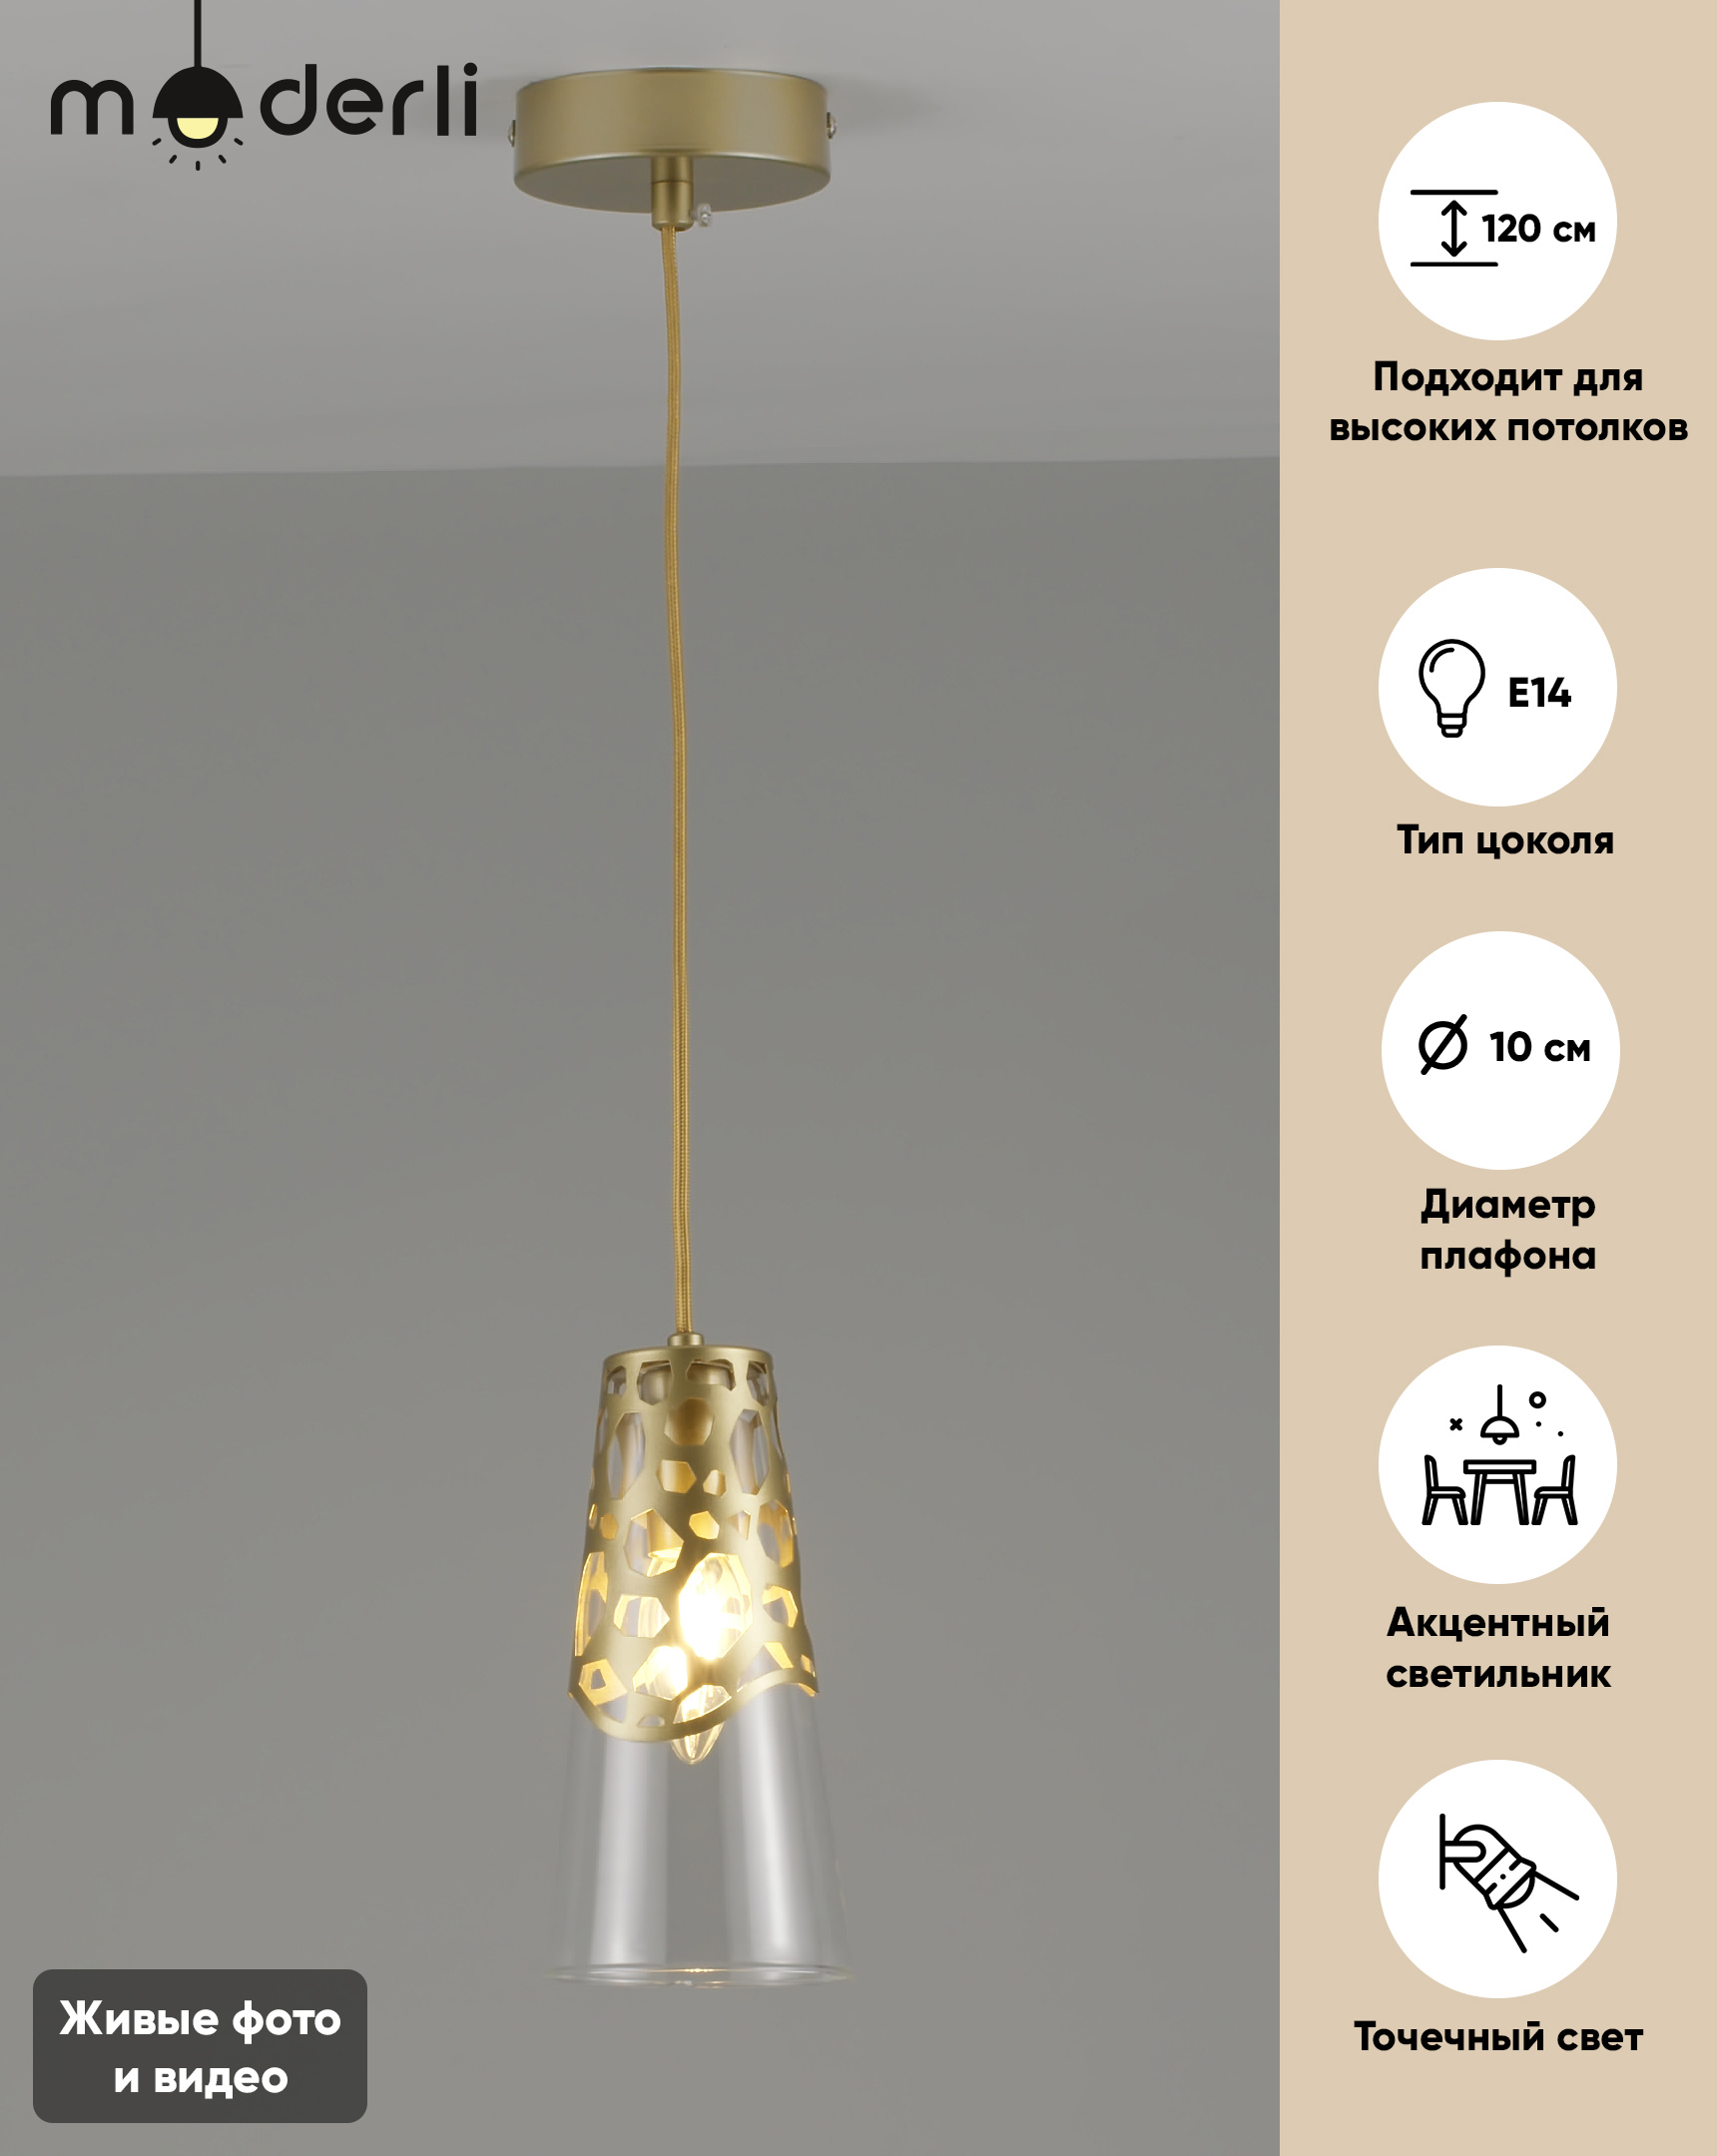 90251658 Светильник подвесной Natali 1 лампа 2 м² цвет золото STLM-0150732 MODERLI